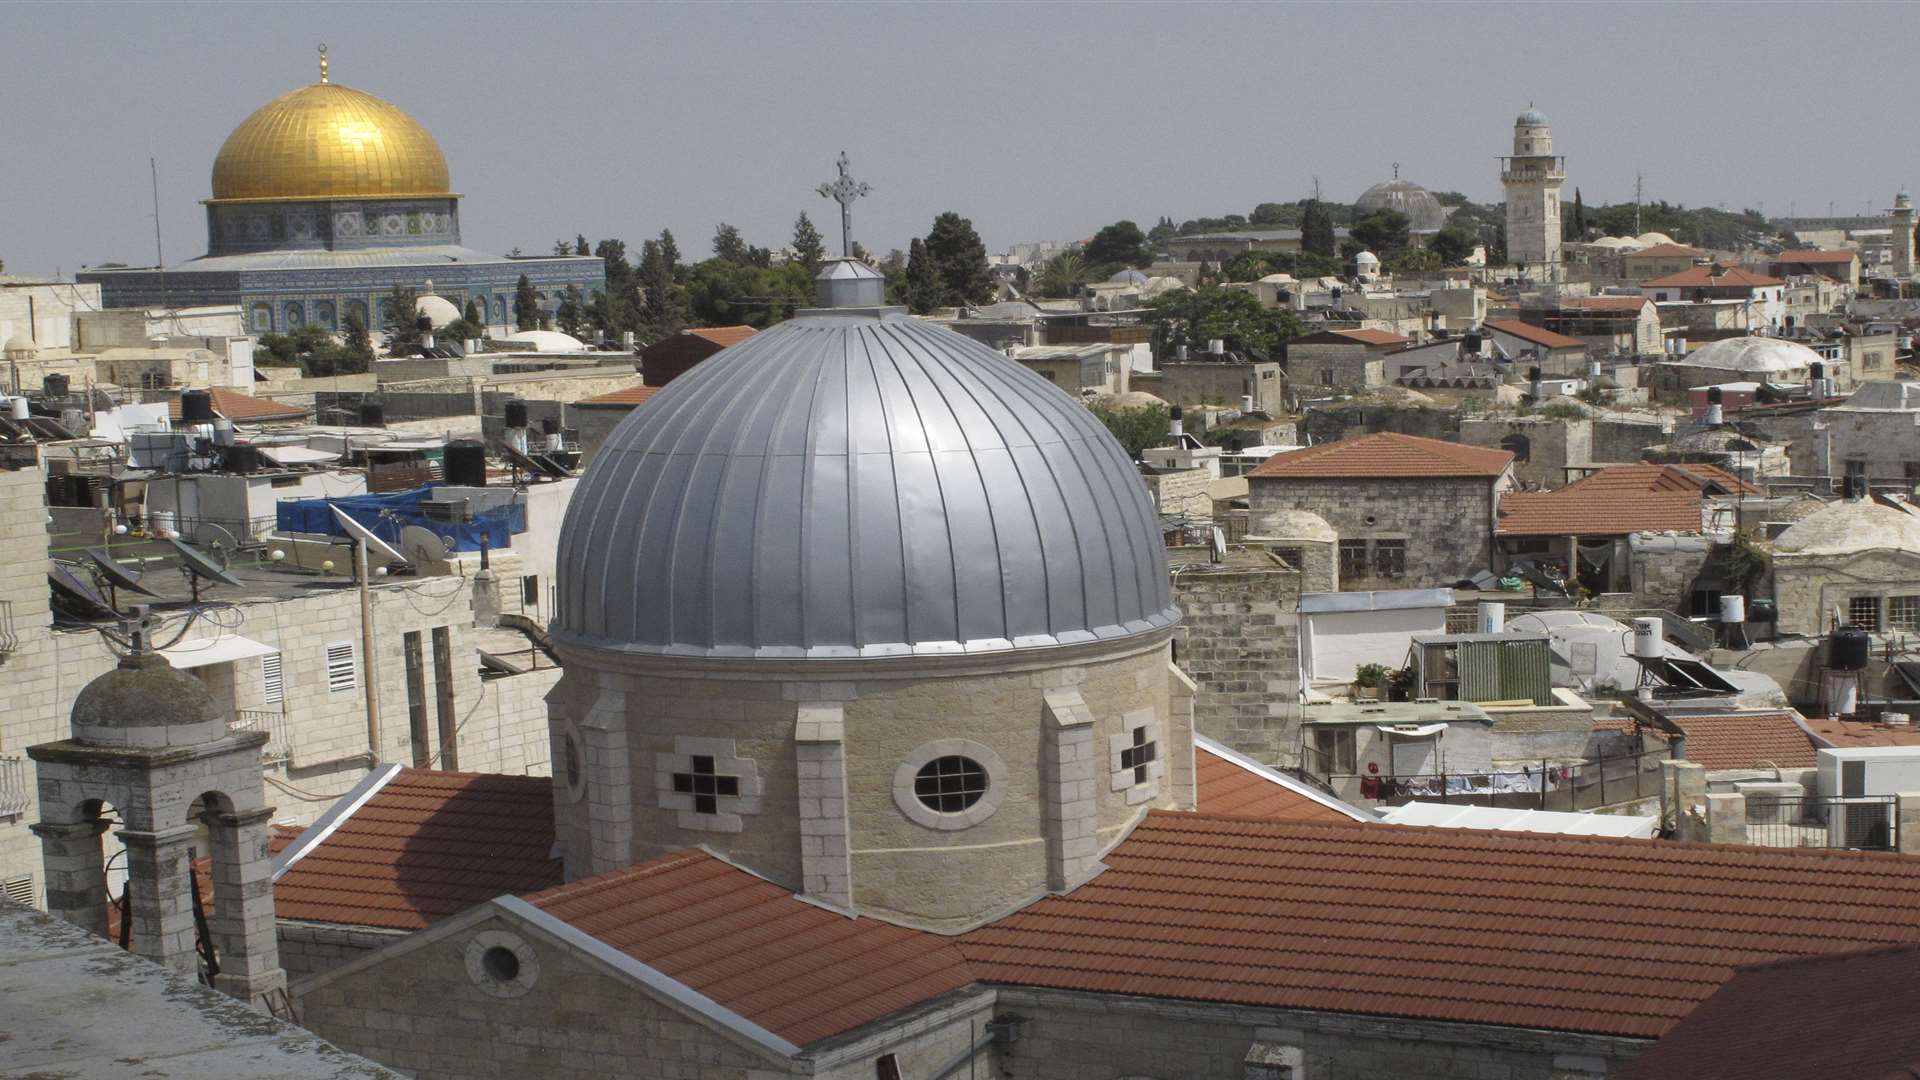 The view across Jerusalem's Old City